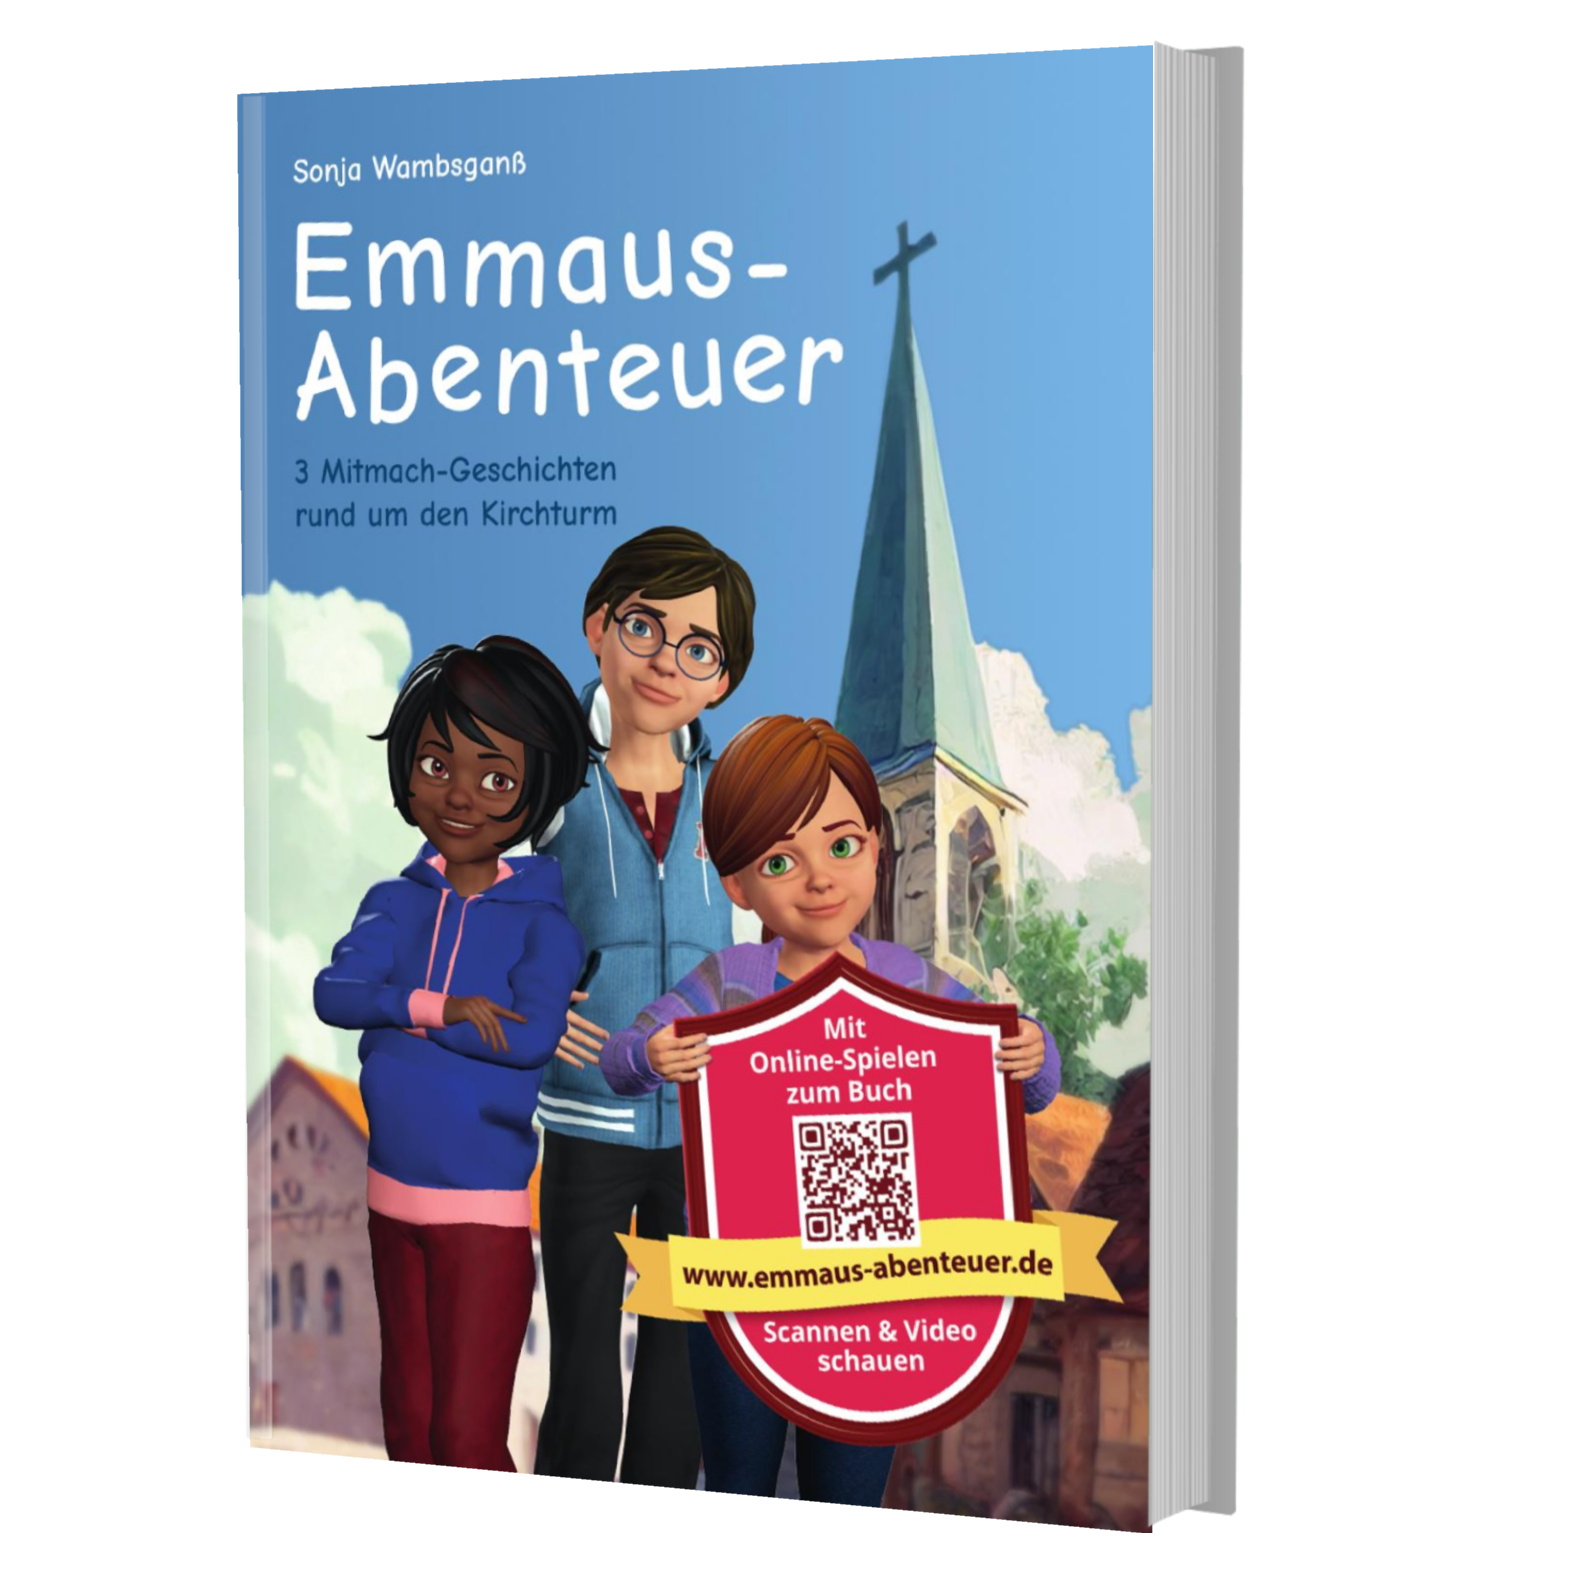 Buchcover "Emmaus-Abenteuer" 3 Mitmach-Geschichten rund um den Kirchturm